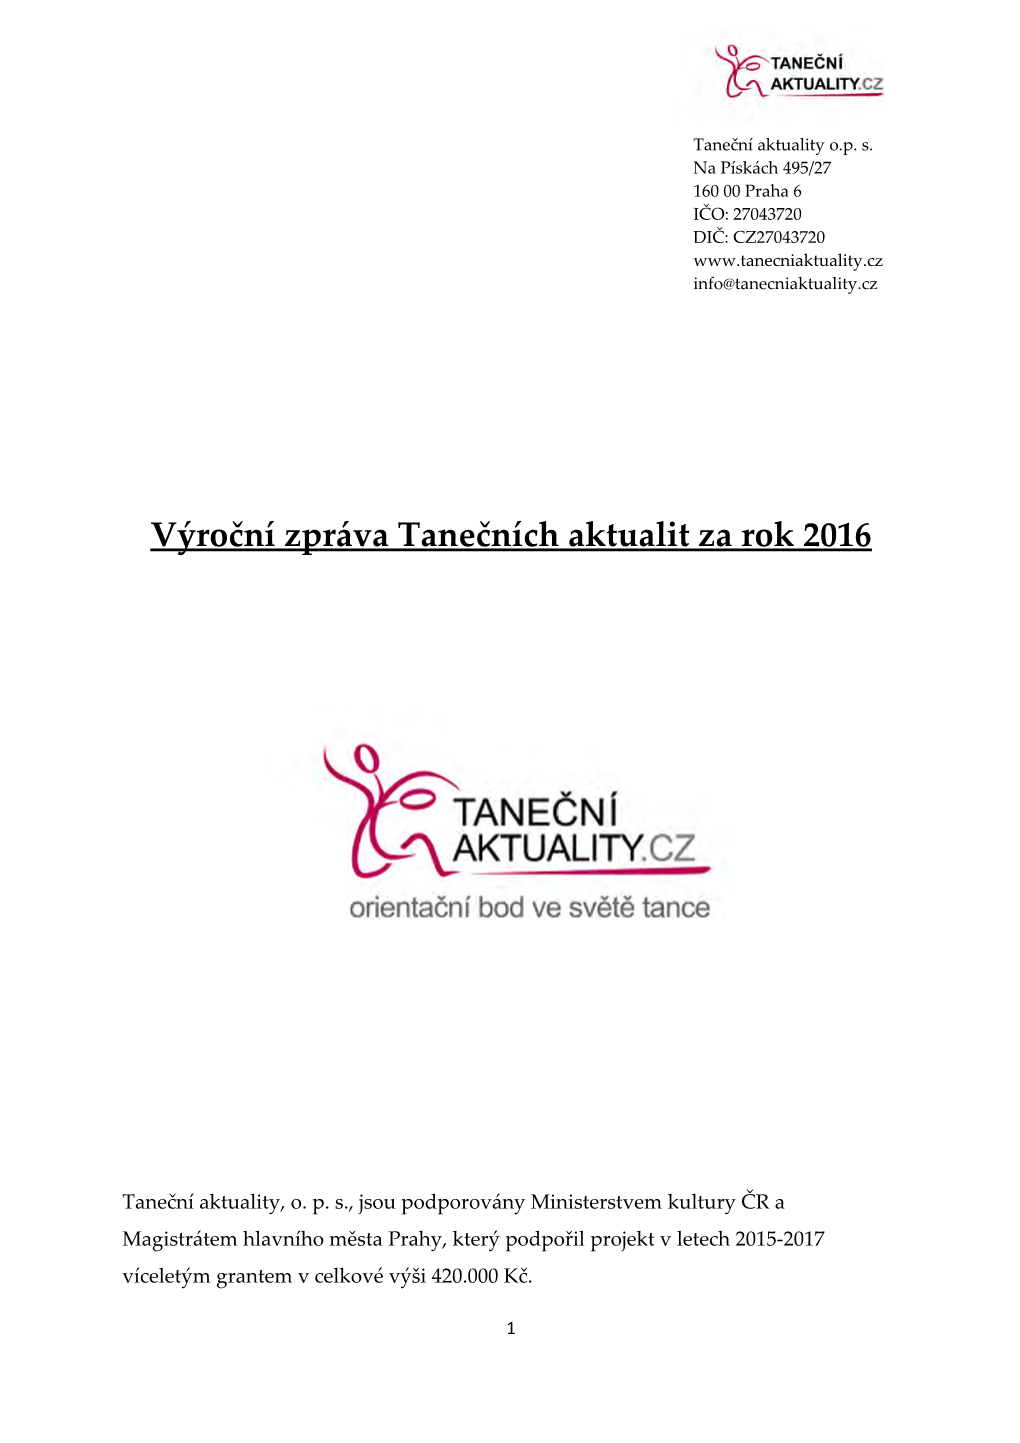 Výroční Zpráva TA 2016.Pdf (3,7